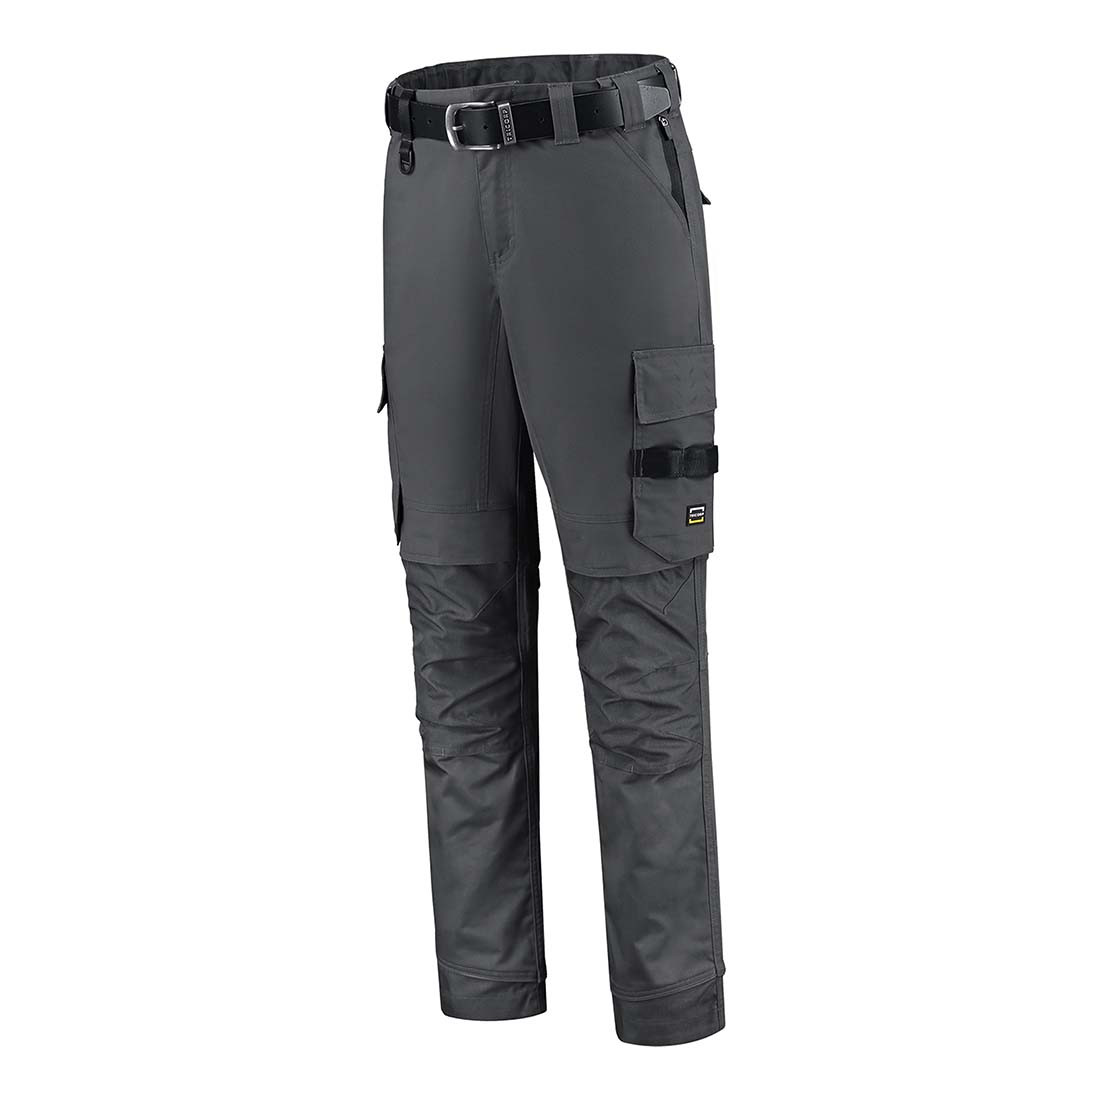 Pantalon de travail élastique unisexe - Les vêtements de protection